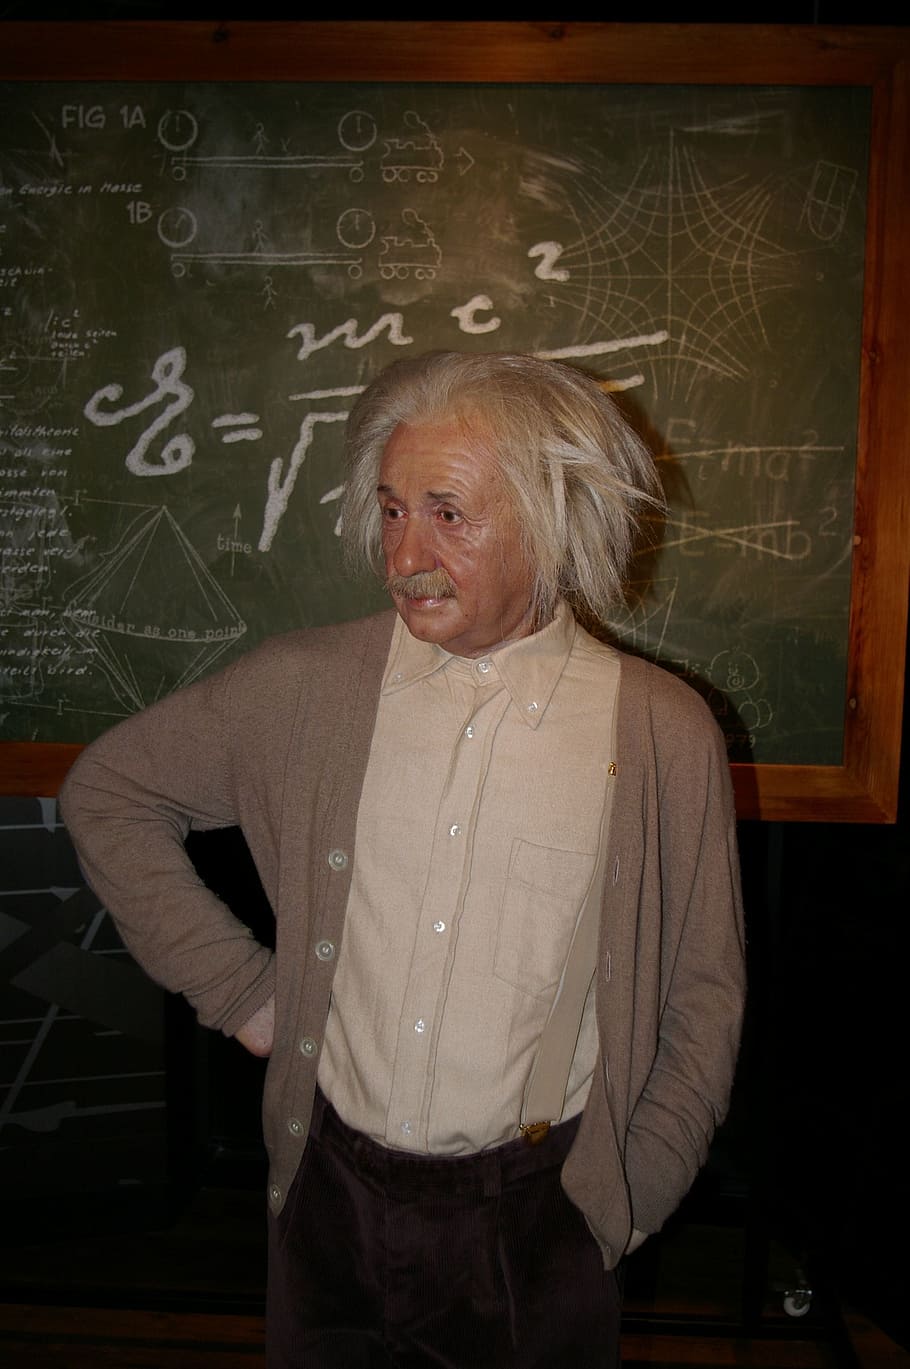 アルバートアインシュタインの衣装, ワックスフィギュア, ベルリン, アインシュタイン, 黒板, 教室, 教育, 人々, 1人, 学習